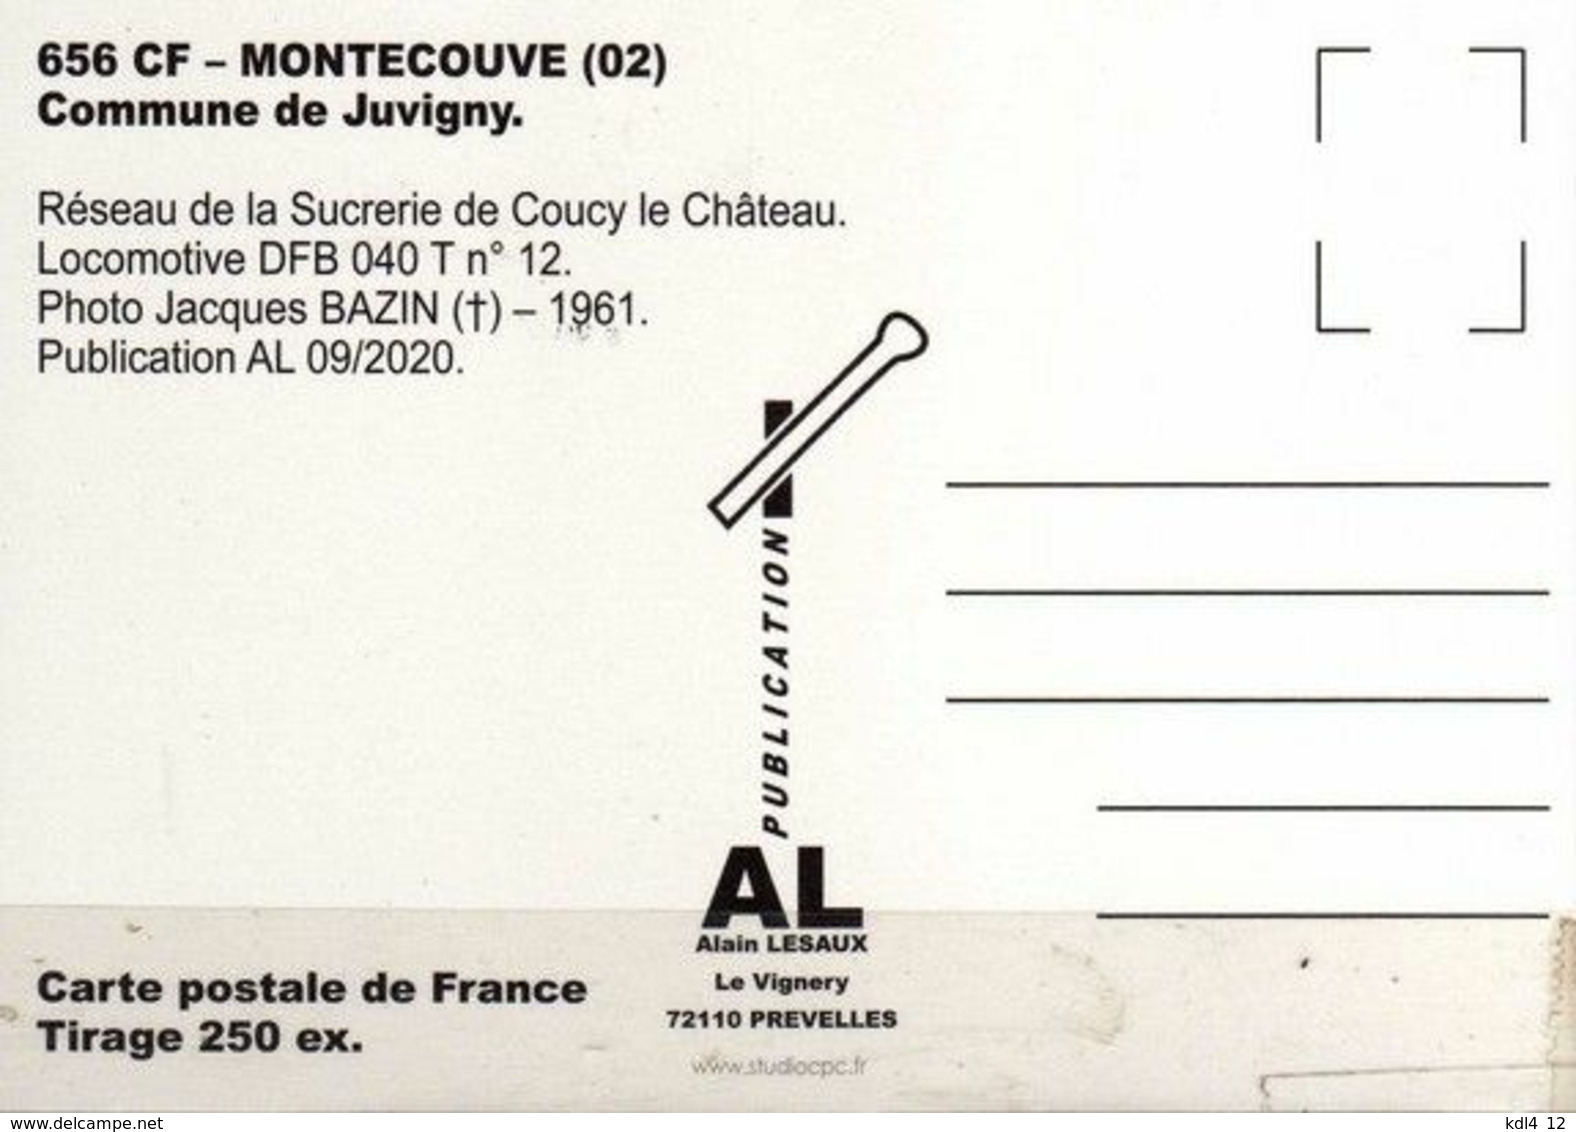 AL - Lot de 15 cartes postales modernes ferroviaires - Région 2 - Nord - Série 9/2020